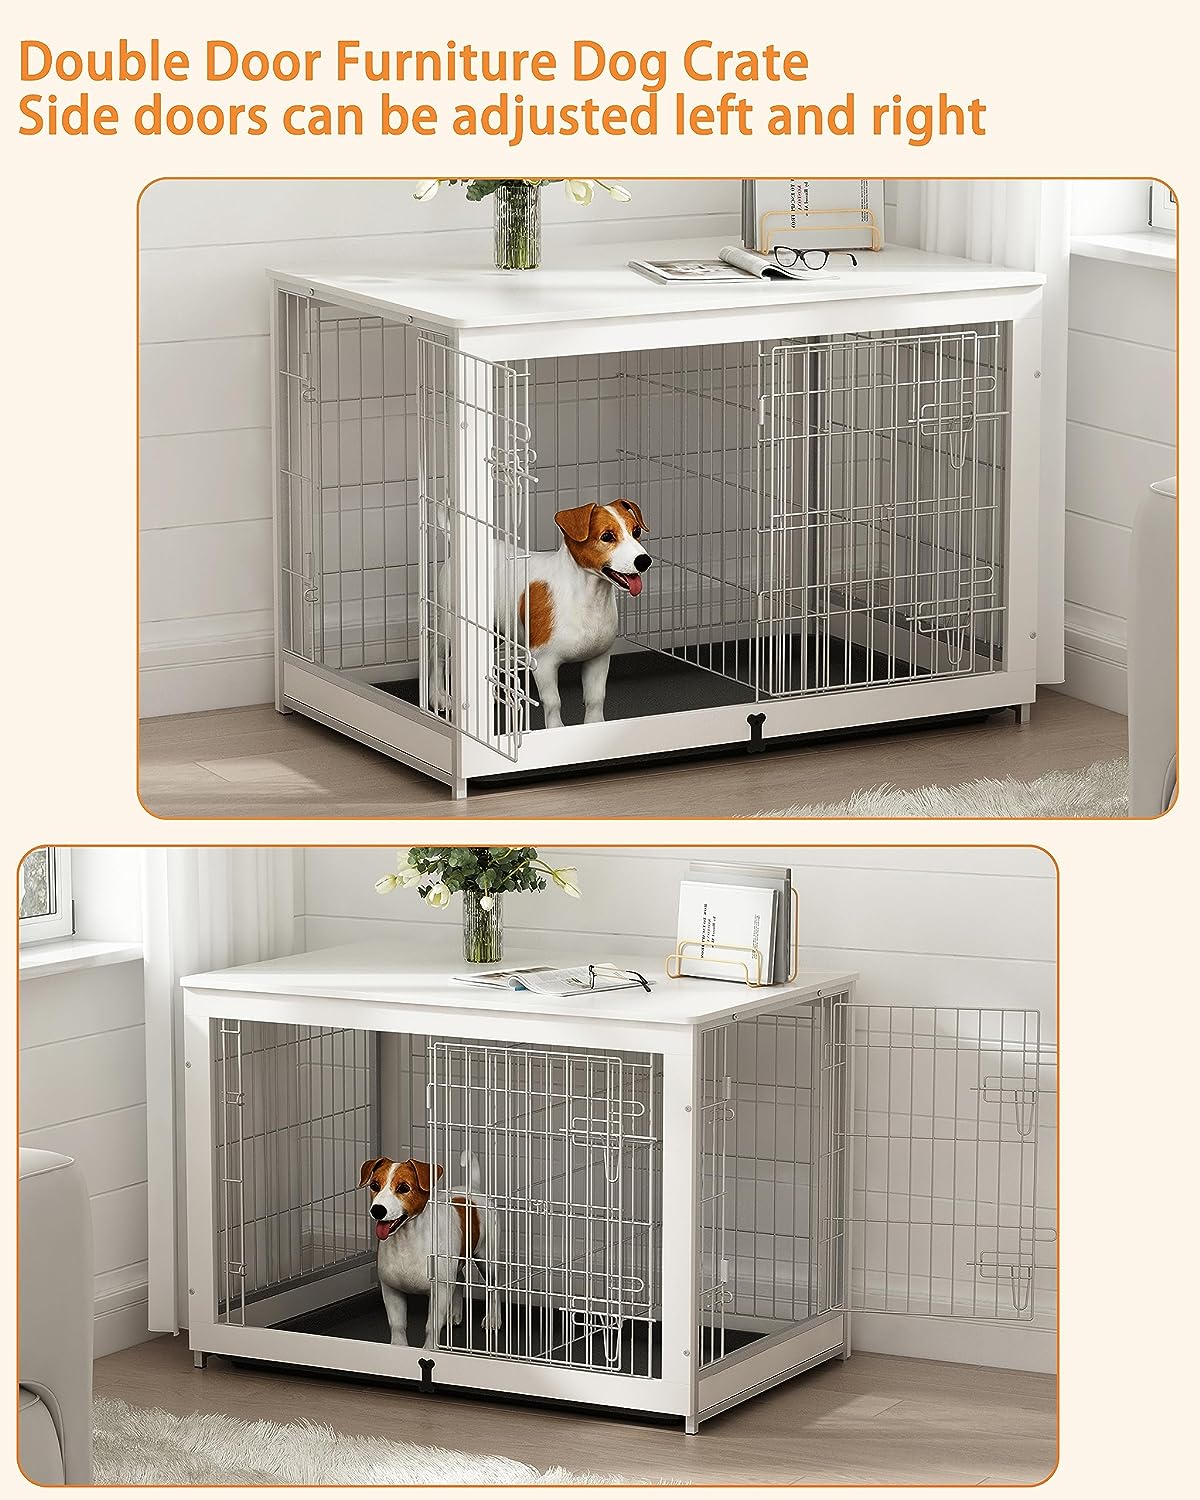 Mueble de madera para perros con panel divisor, mesa auxiliar de jaula para